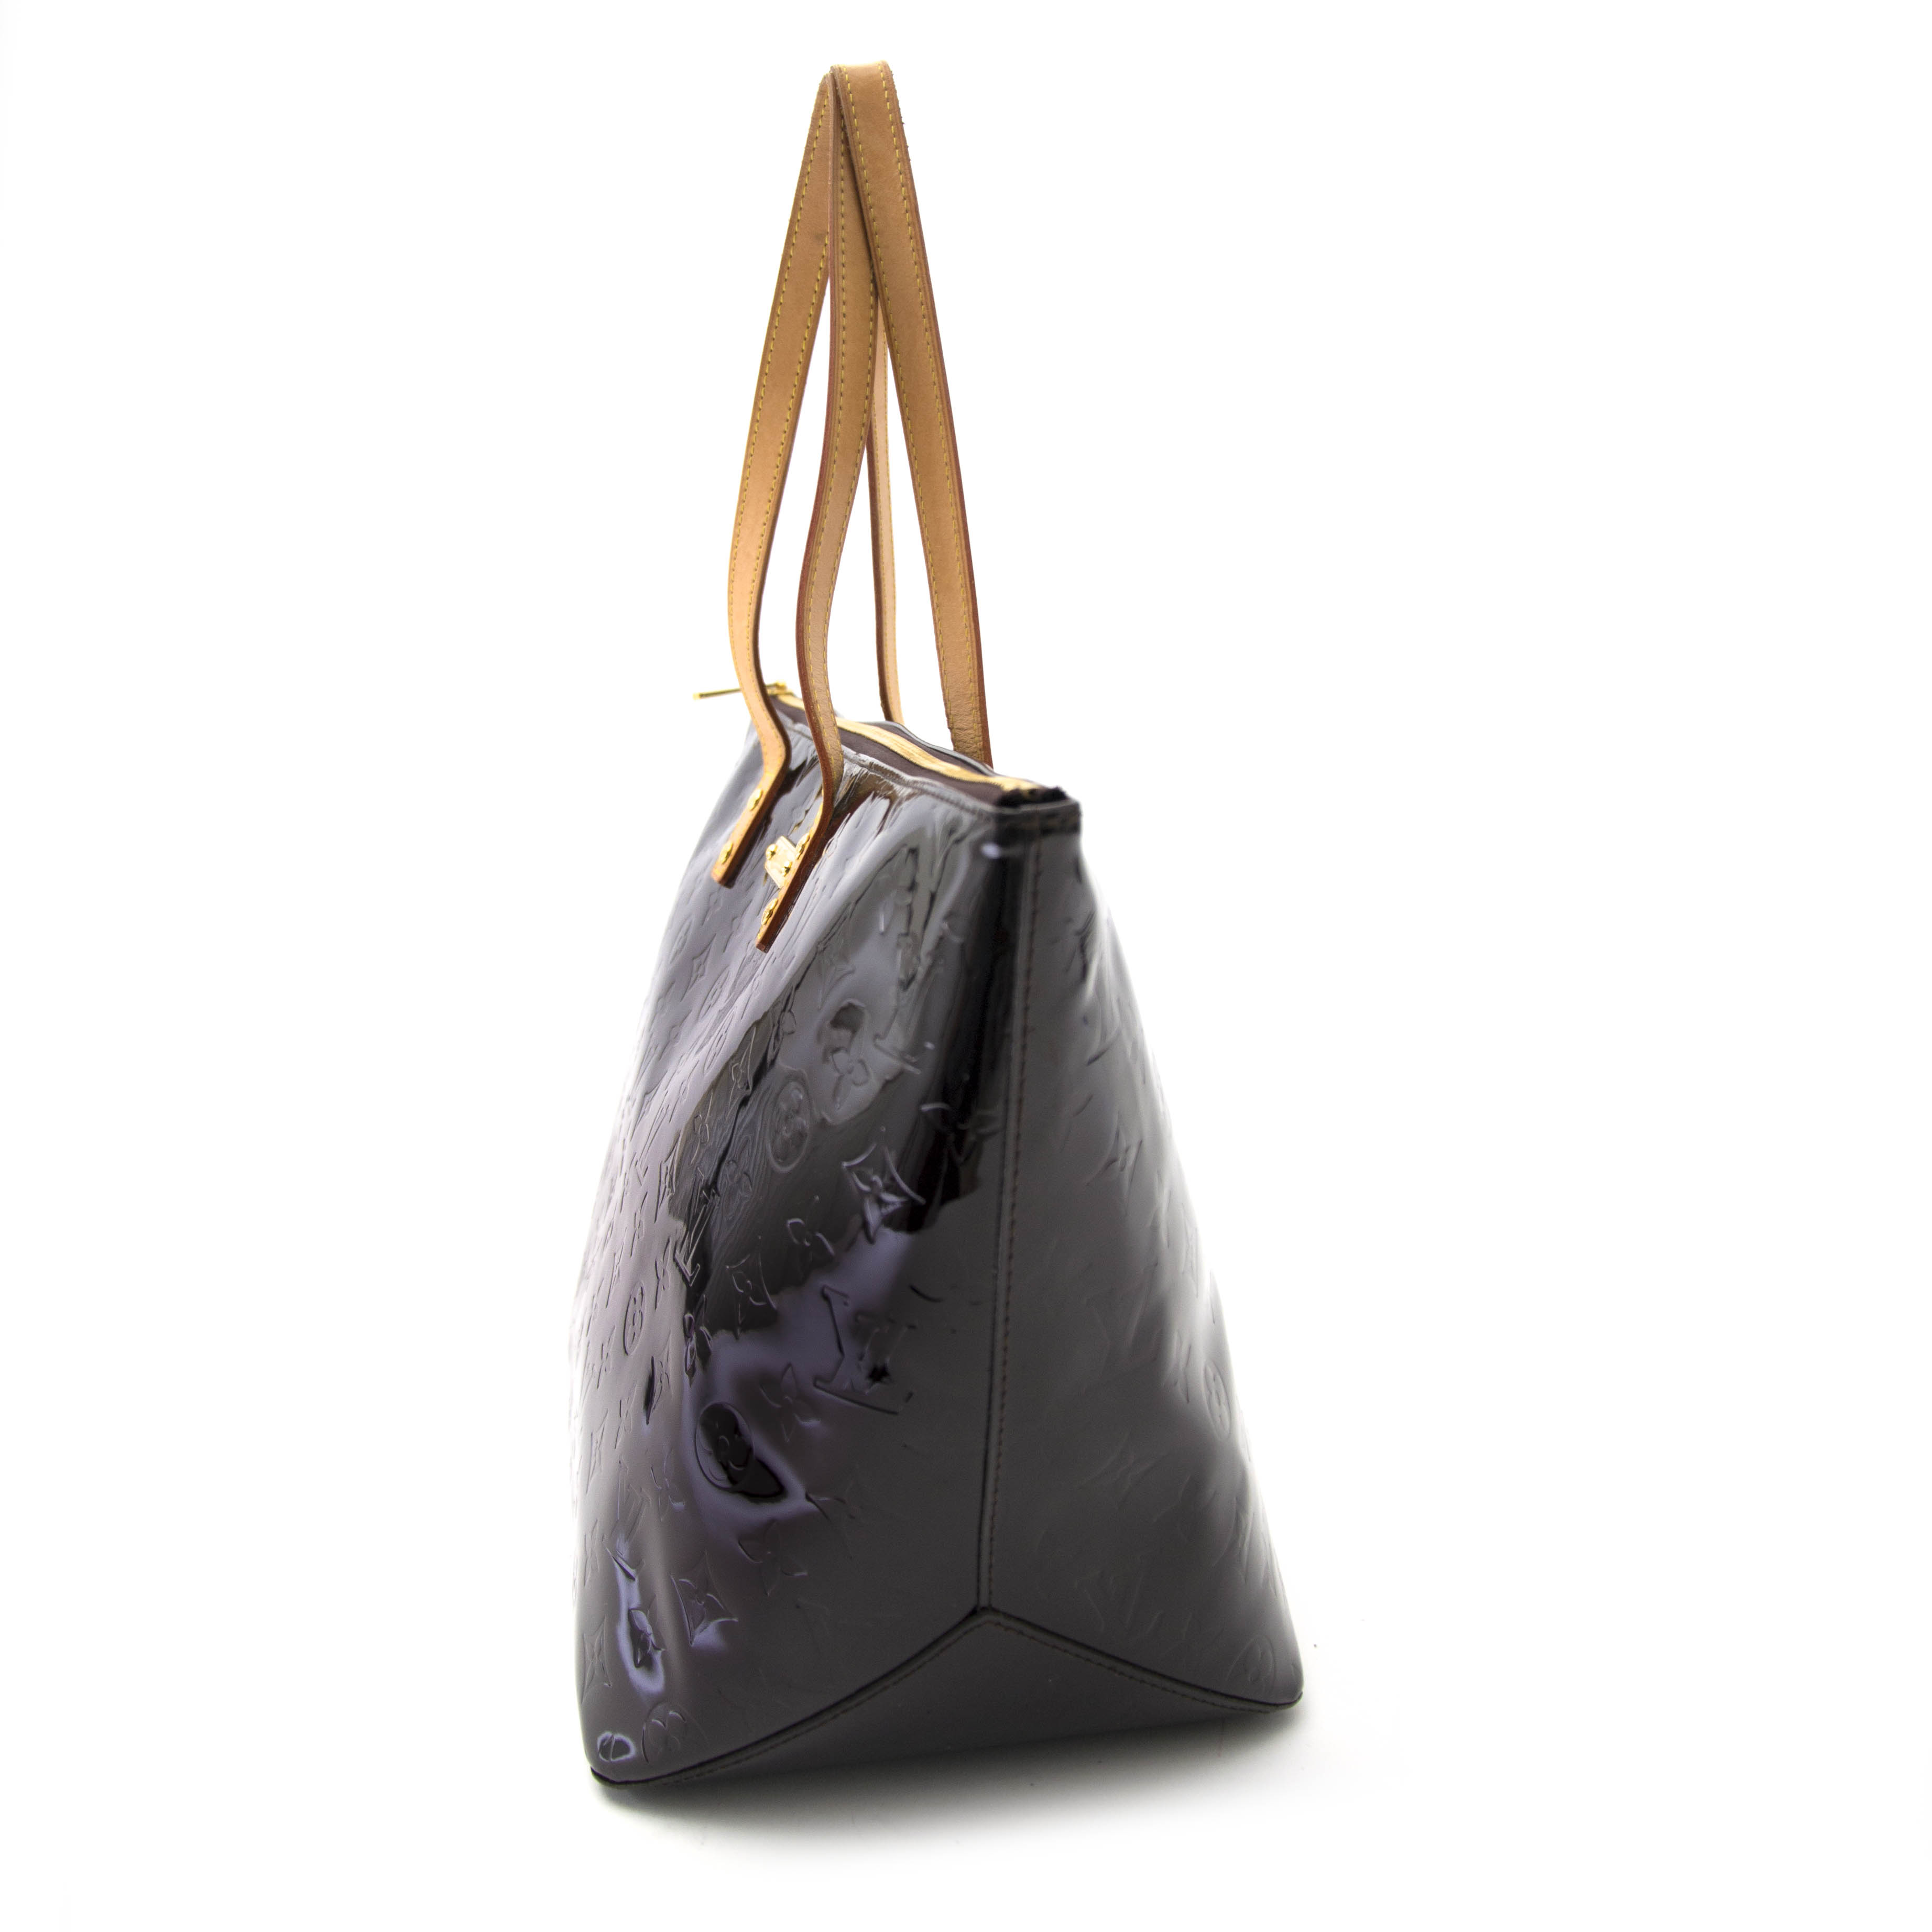 Louis Vuitton Vernis Bellevue Tote Bag – AMUSED Co